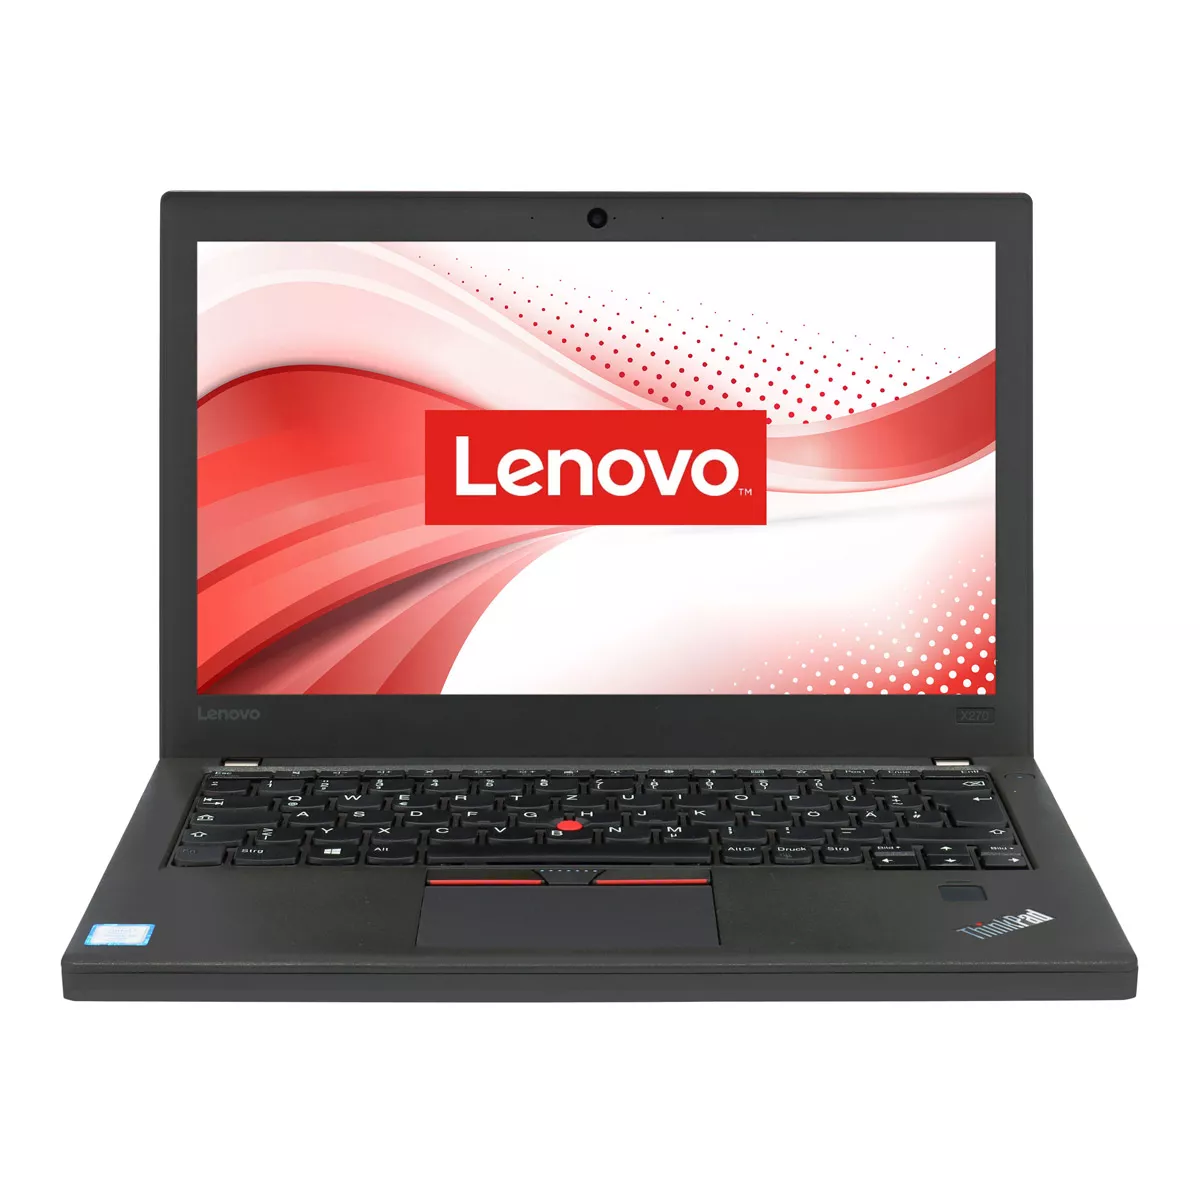 Lenovo ThinkPad X270 Core i5 6300U 240 GB M.2 SSD Webcam A